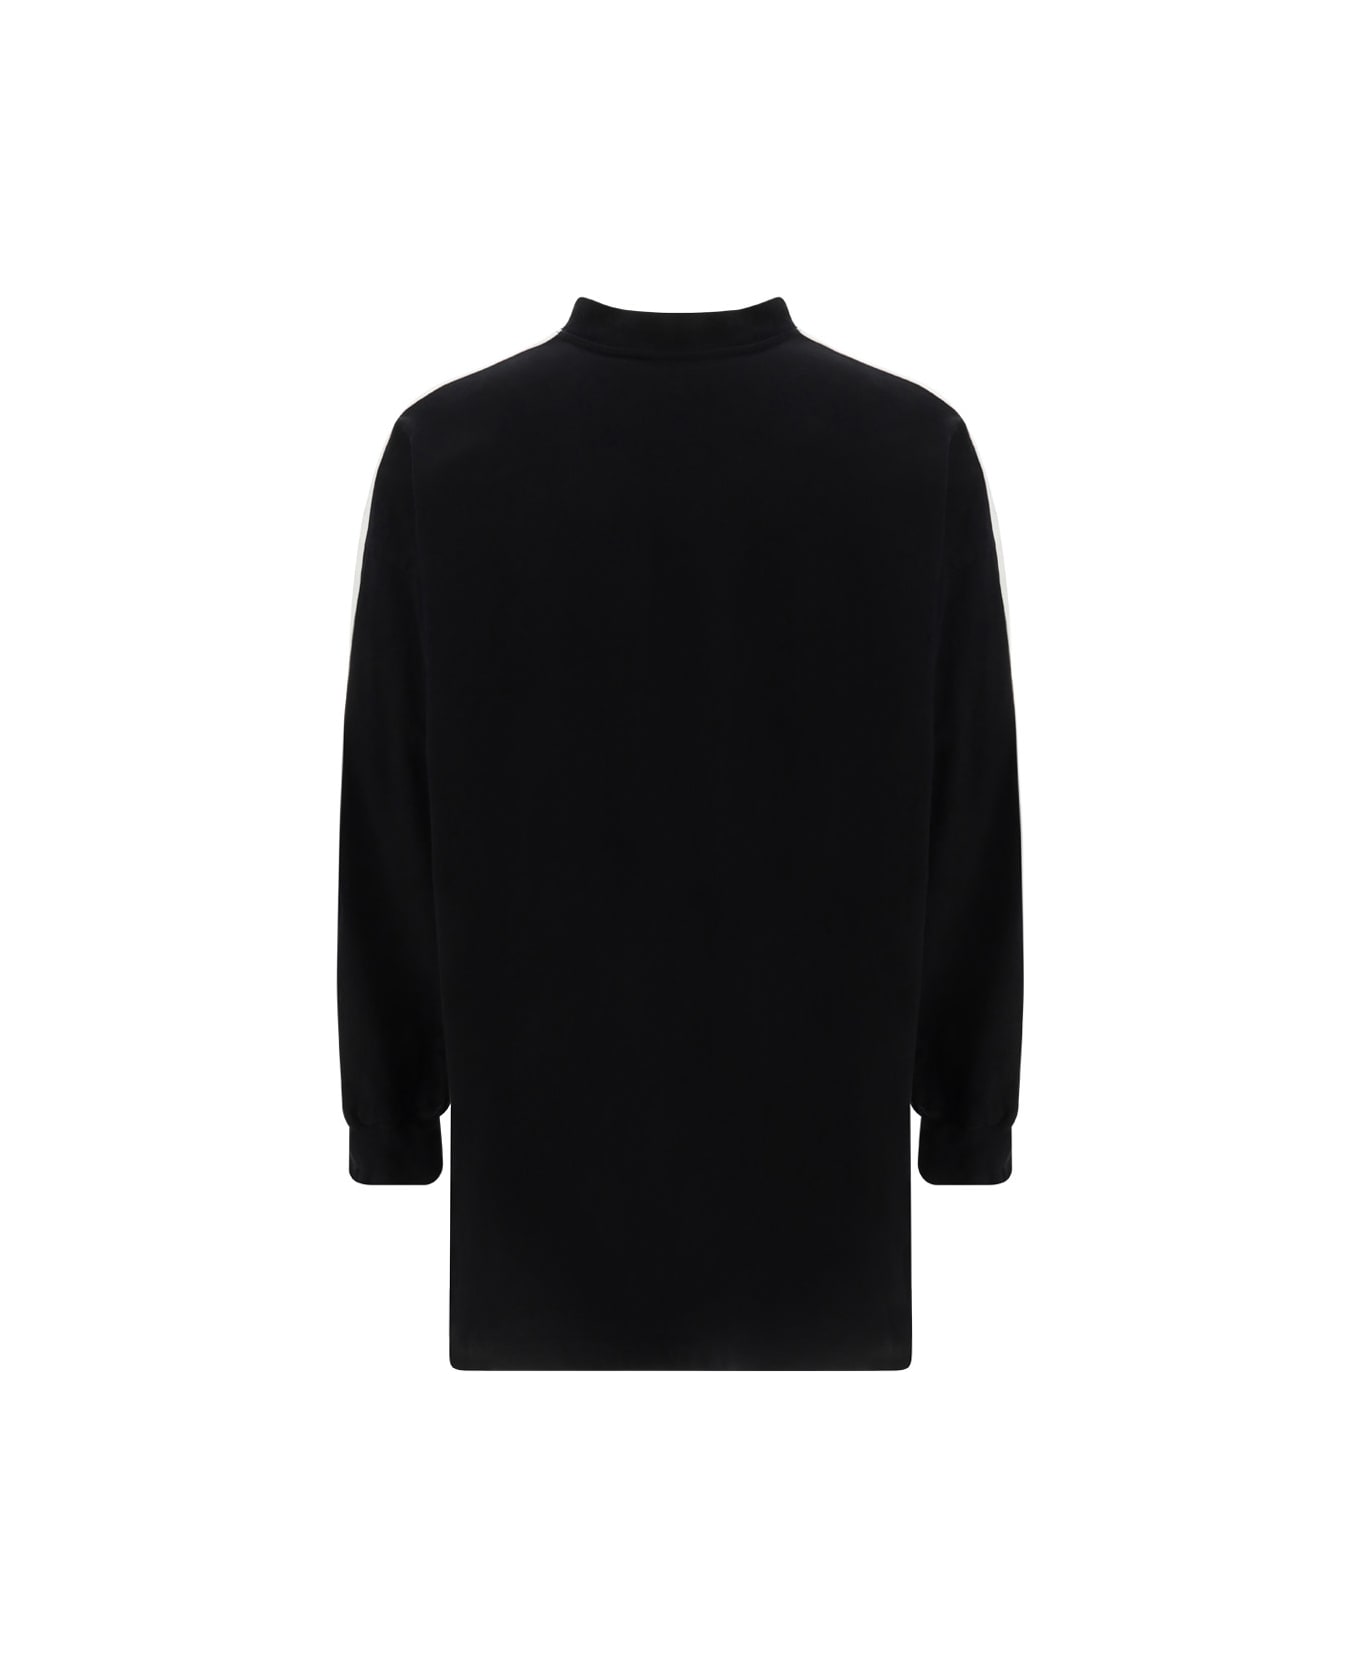 Balenciaga X Adidas agravic Jersey - Black/white/white